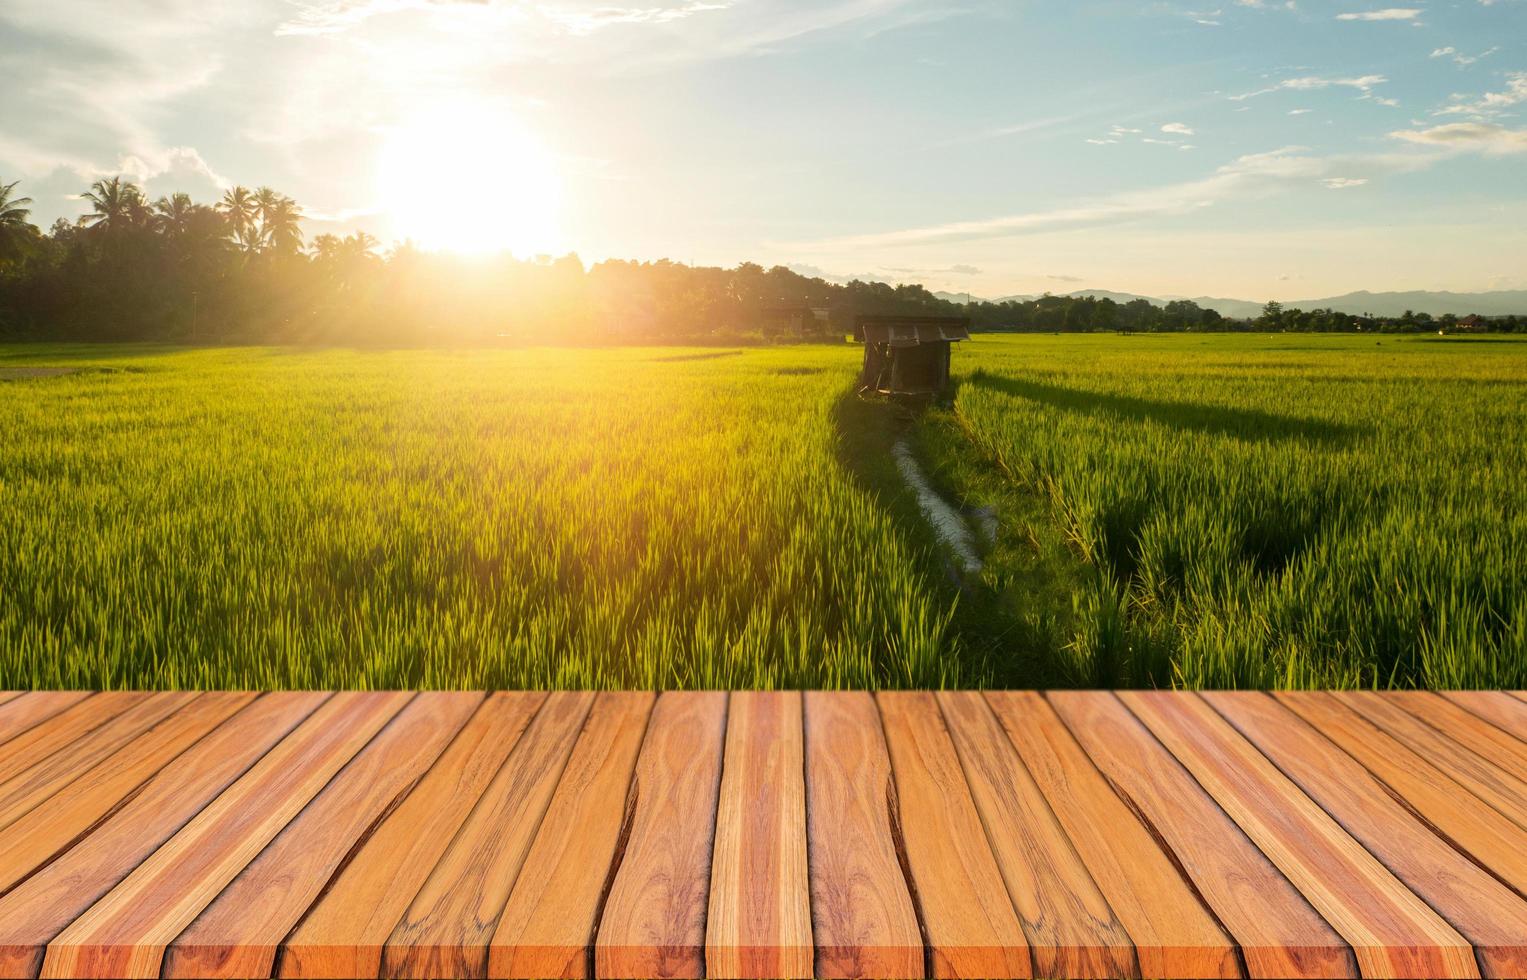 houten planken en prachtige natuurlijke landschappen van groene rijstvelden in regenseizoen en zonsondergang. foto